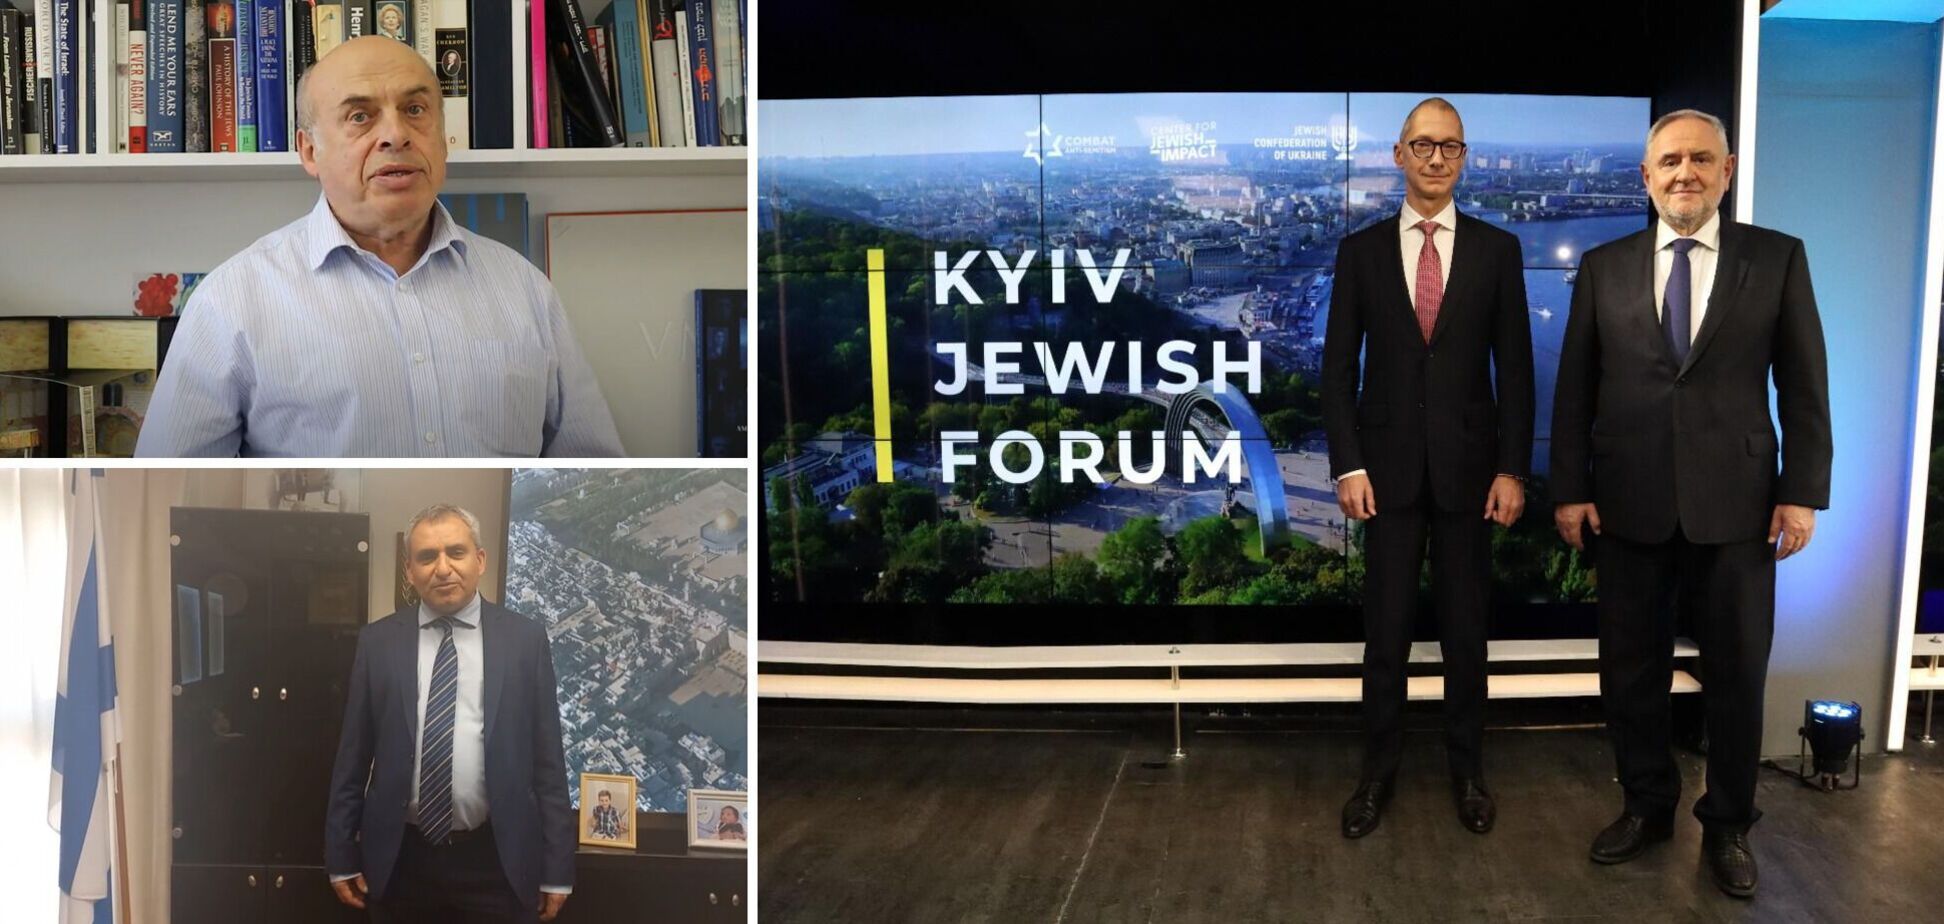 Kyiv Jewish Forum: на форуме обсудили огромный потенциал для сотрудничества Украины и Израиля